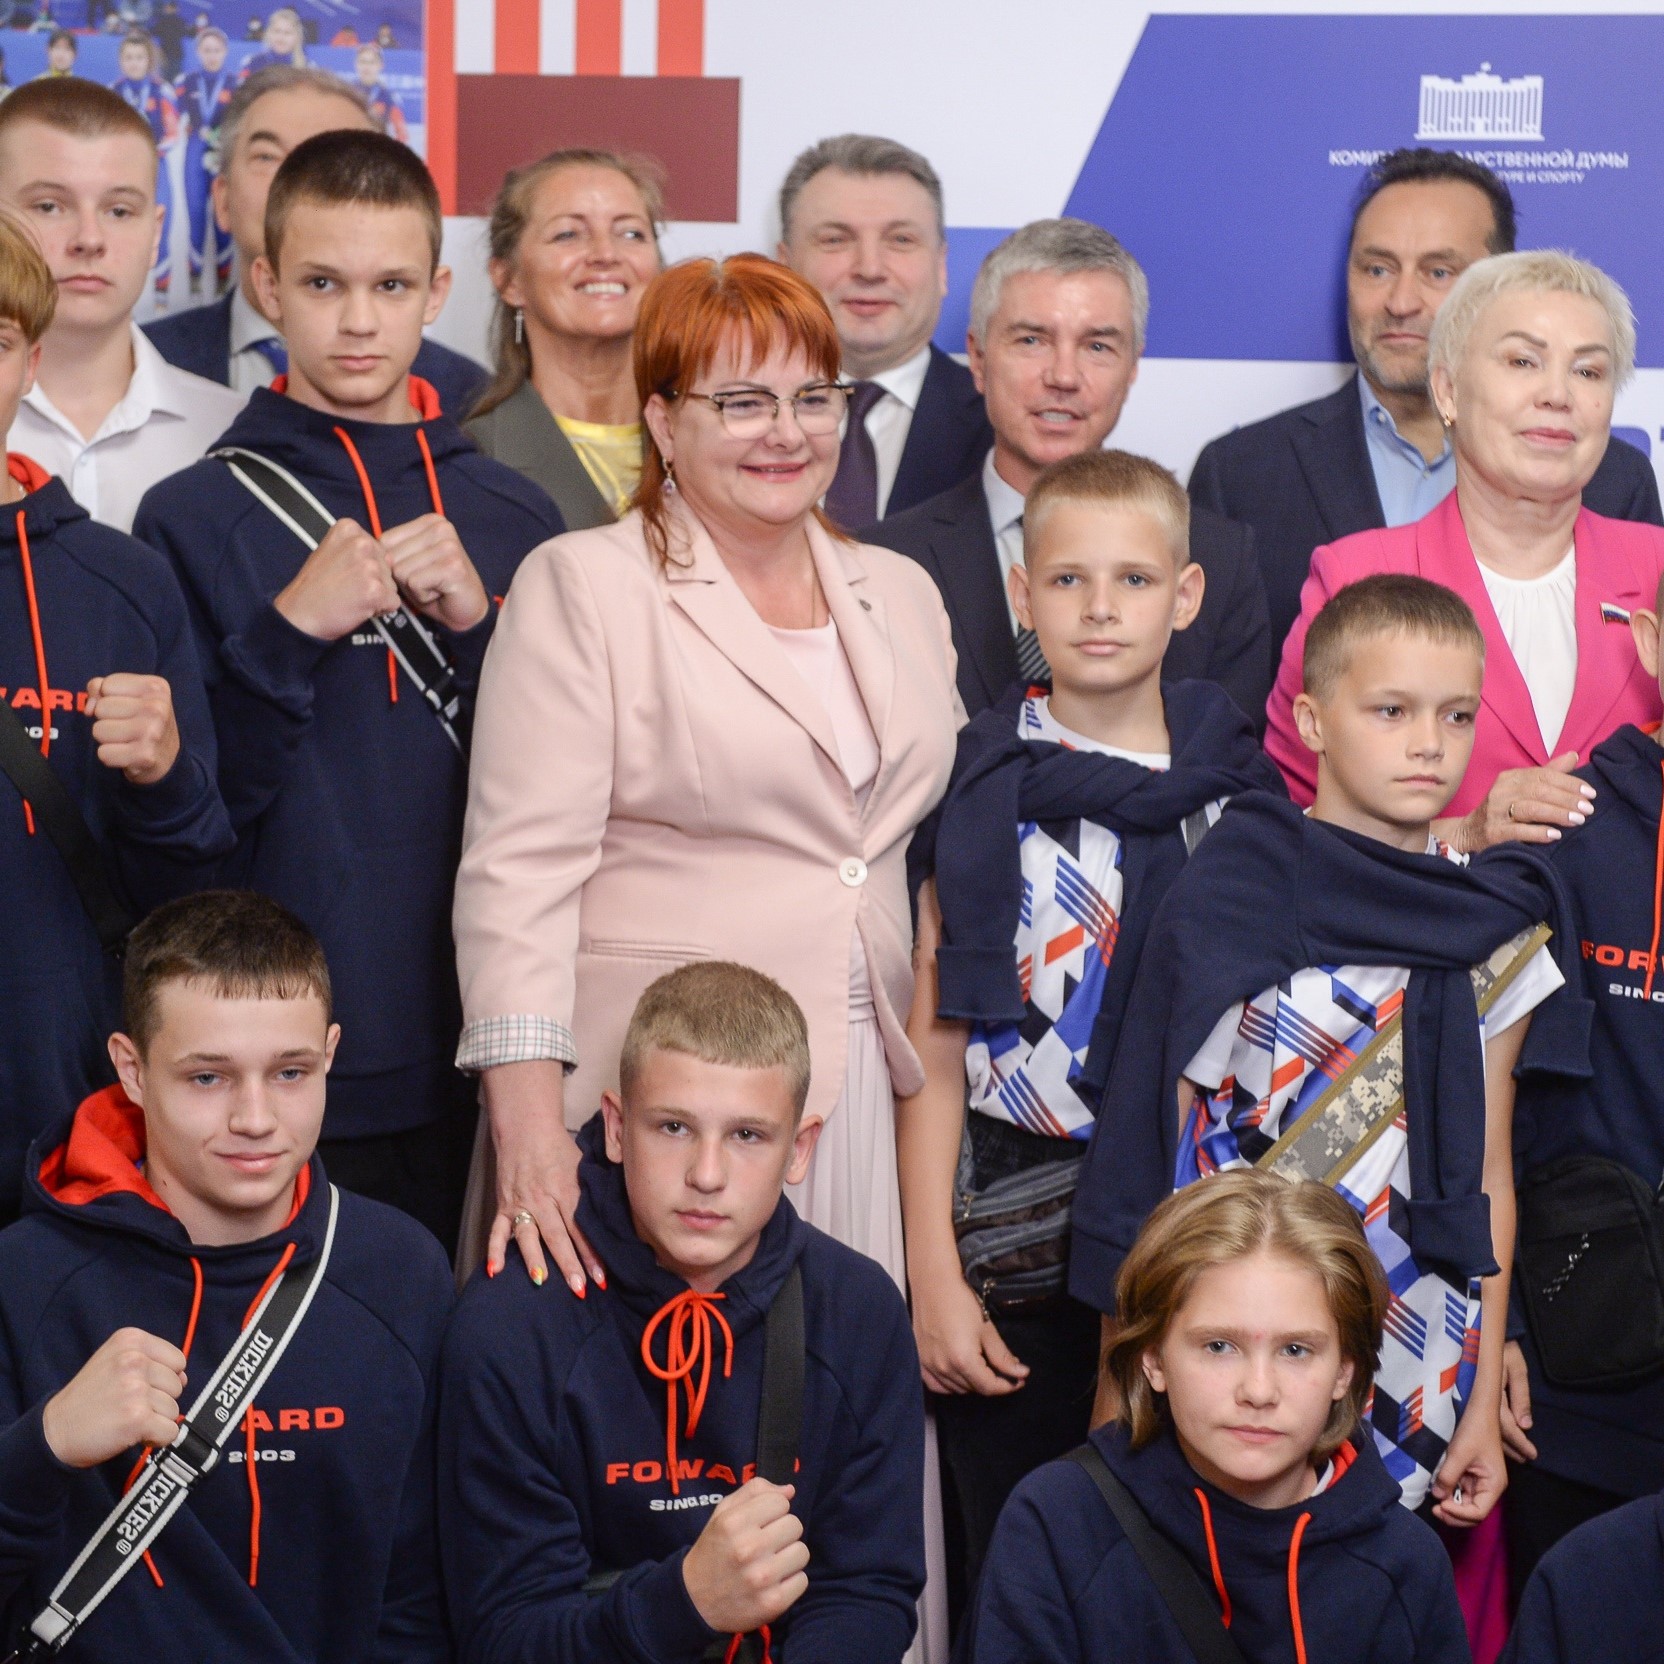 Юные боксёры из Луганской и Донецкой Народных Республик в Москве